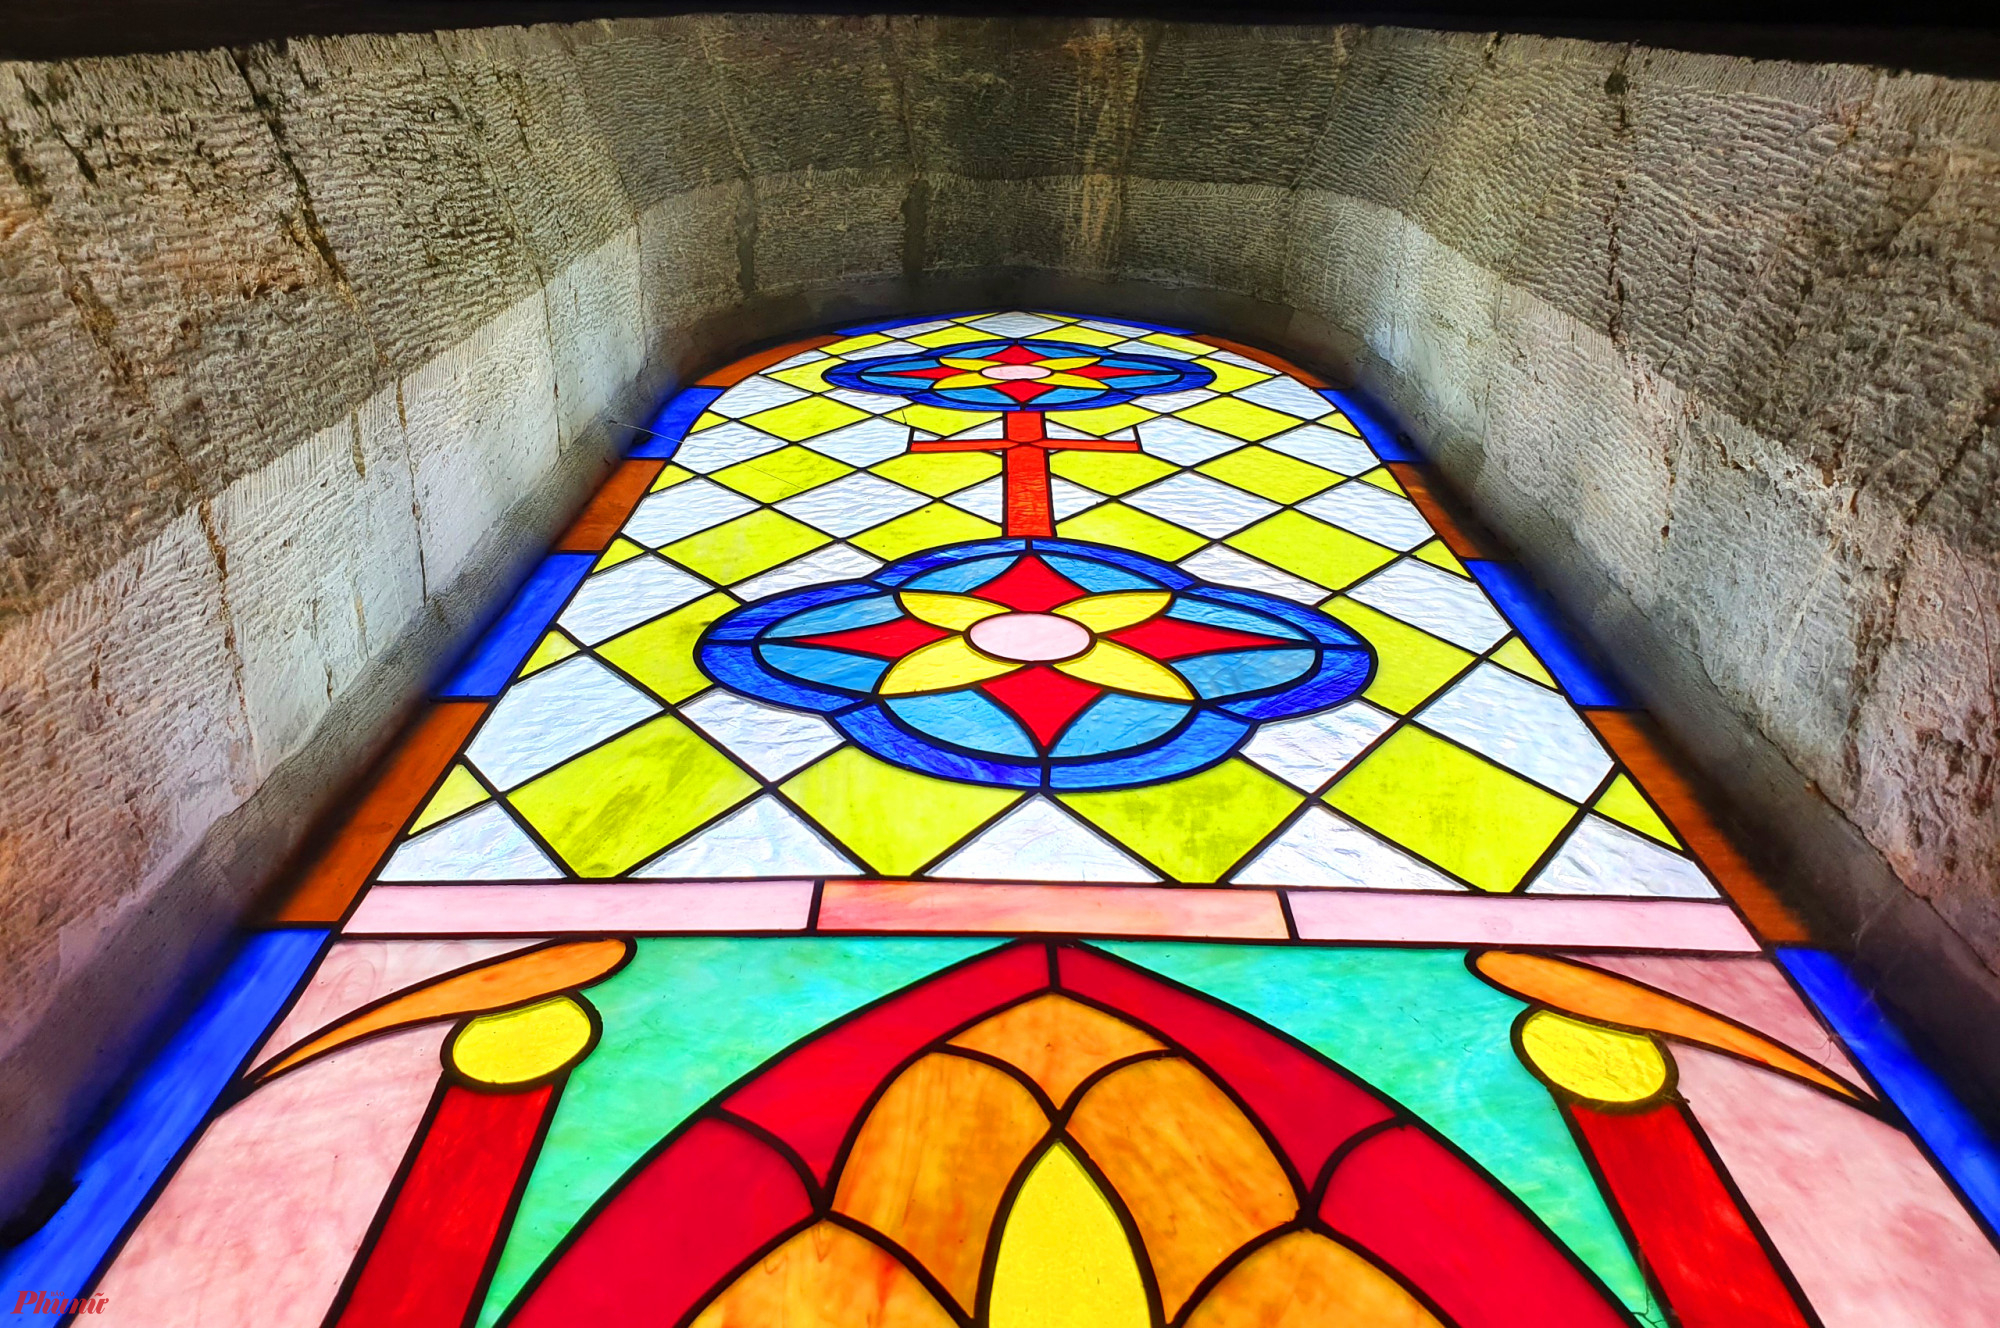 Từng ô cửa sổ bằng kính được họa những bức tranh mang biểu tượng và hình các vị Thánh Công giáo được bố trí dọc hai bên hông nhà thờ tạo thêm điểm nhấn cho ngôi thánh đường này.